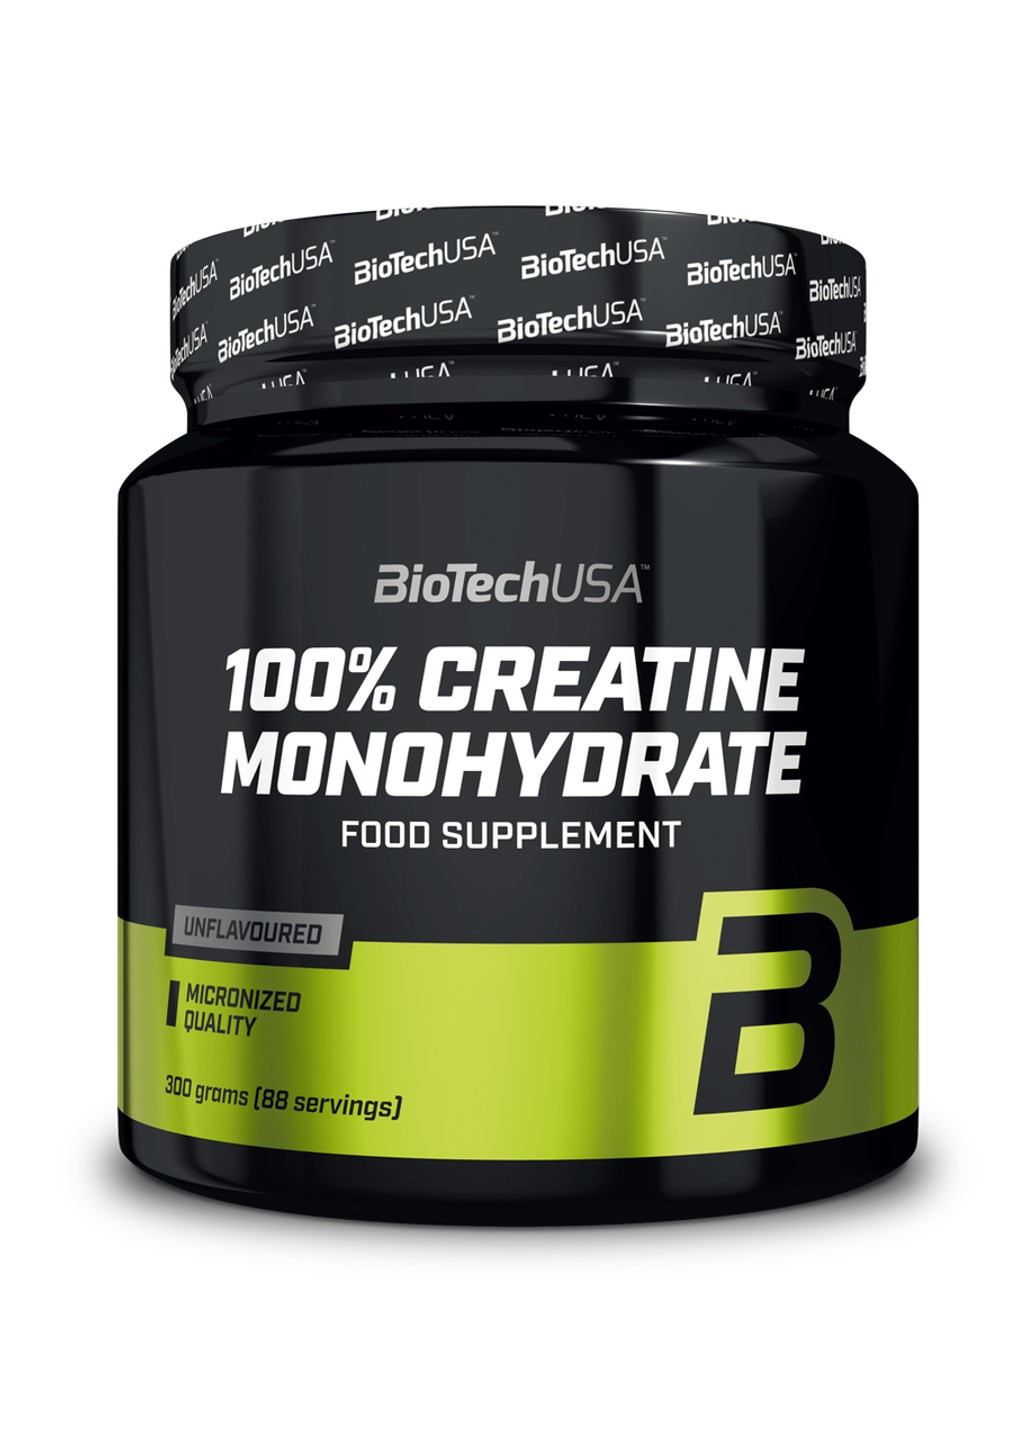 Креатин моногидрат BioTech 100% Creatine Monohydrate (300 г) биотеч без вкуса Biotechusa (255279700)